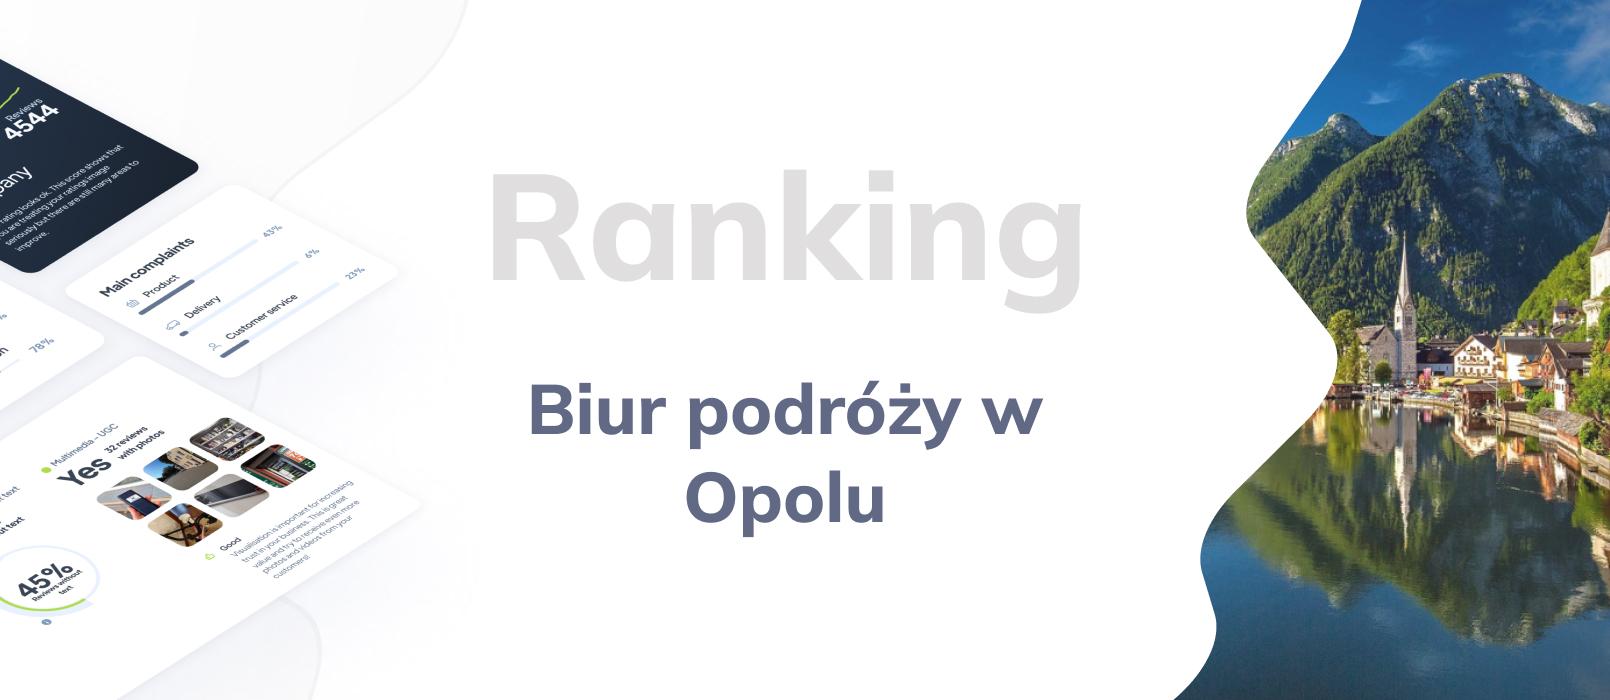 Biura podróży w Opolu - ranking TOP 10